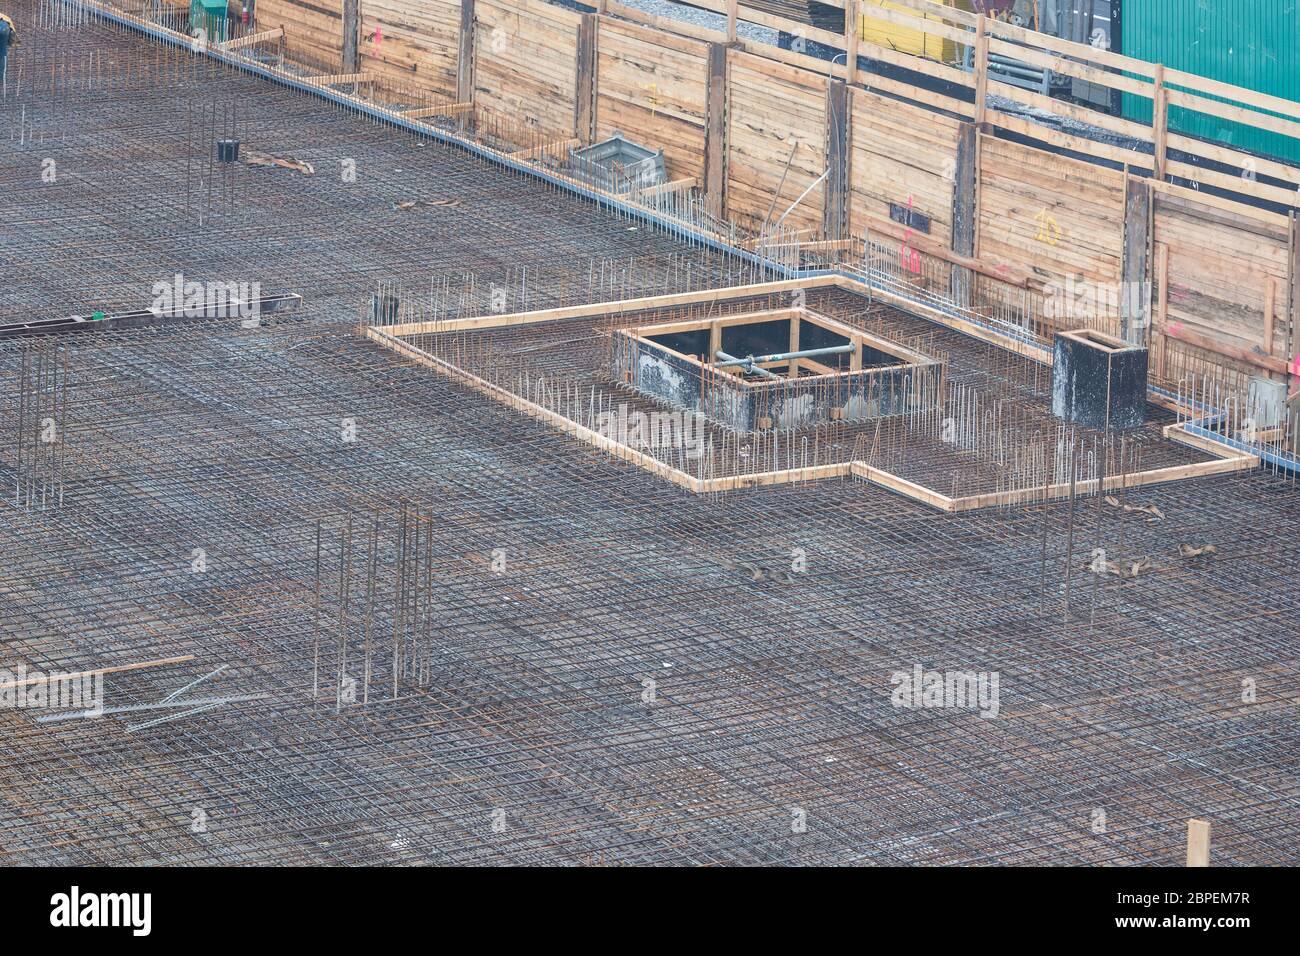 Fundamentbau aus Stahl und Beton für die Errichtung eines Mehrfamilienhauses mit Tiefgarage. Stock Photo